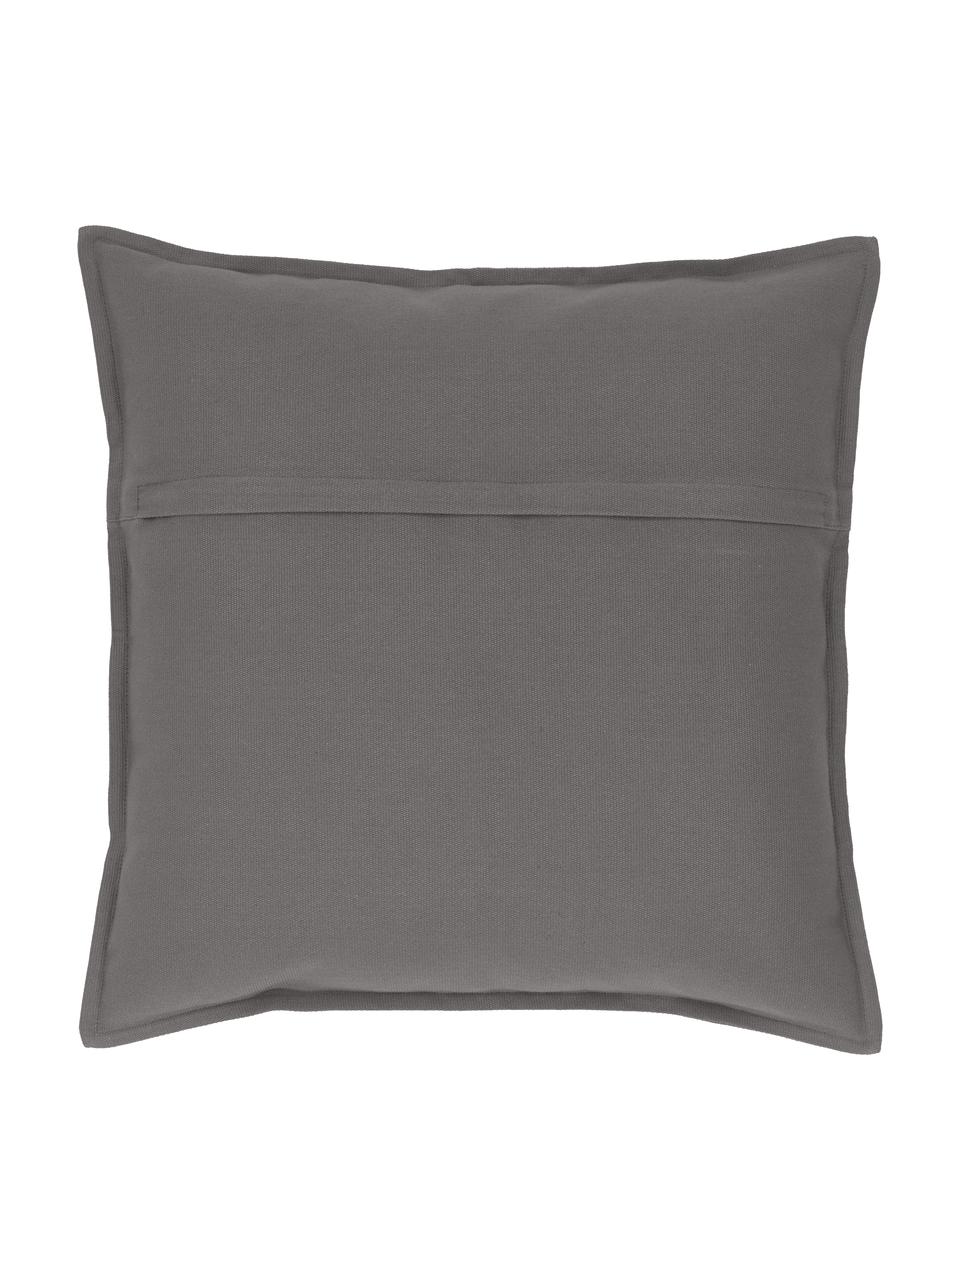 Poszewka na poduszkę z bawełny Mads, 100% bawełna, Szary, S 40 x D 40 cm